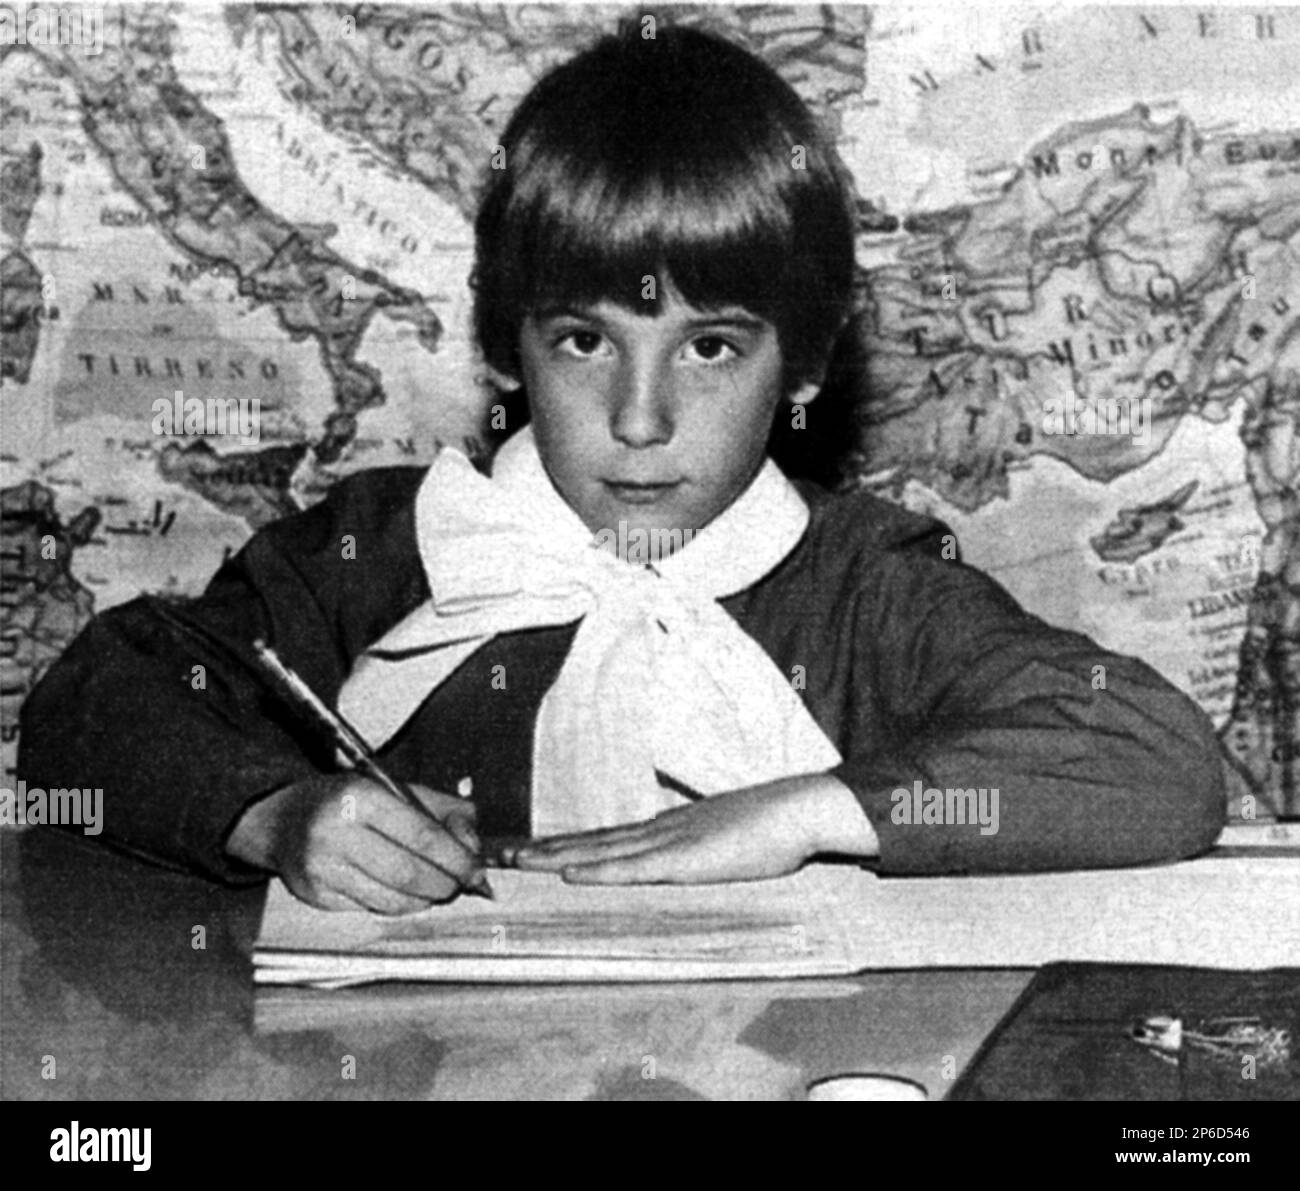 The celebrated italian television personality ALESSANDRO CECCHI PAONE ( born in Rome , 16 september 1961 ) when was a child in 1967 - TELEVISIONE - POLITICA - POLITICO - POLITIC - POLITICIAN - WRITER - SCRITTORE  - portrait - ritratto - personalita' da giovane bambino da piccolo - personality personalities celebrity celebrities when was young boy child children  - GAY - LGBT - HOMOSEXUALITY - HOMOSEXUAL - Omosessuale -  omosessualità   - SCUOLA - SCOLARO - SCHOOL - PRIMA ELEMENTARE ---  ARCHIVIO GBB Stock Photo